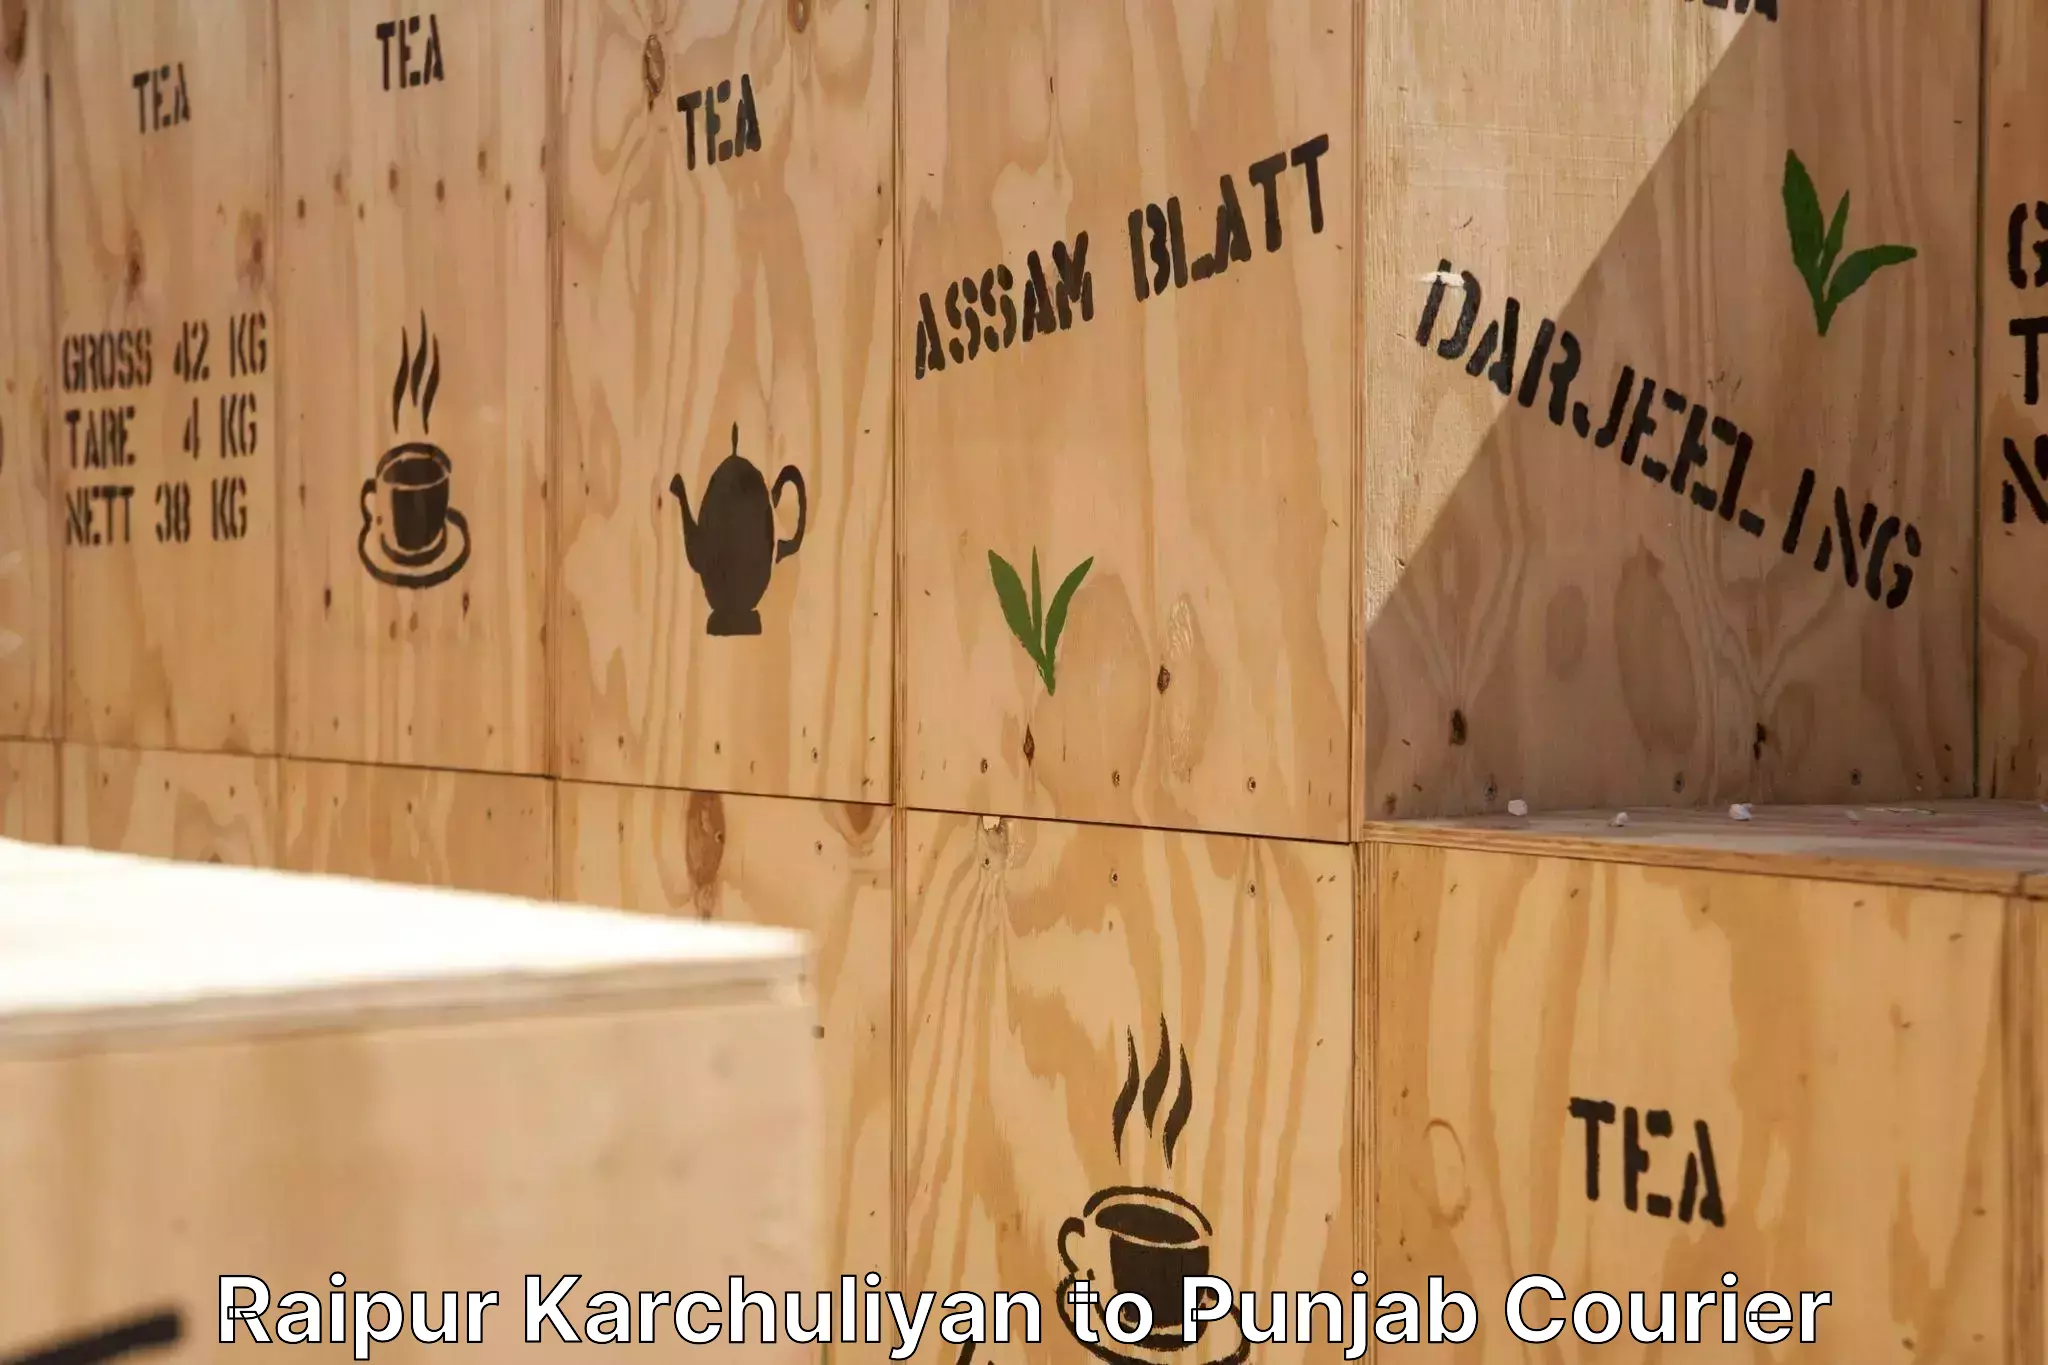 Furniture moving service Raipur Karchuliyan to Punjab